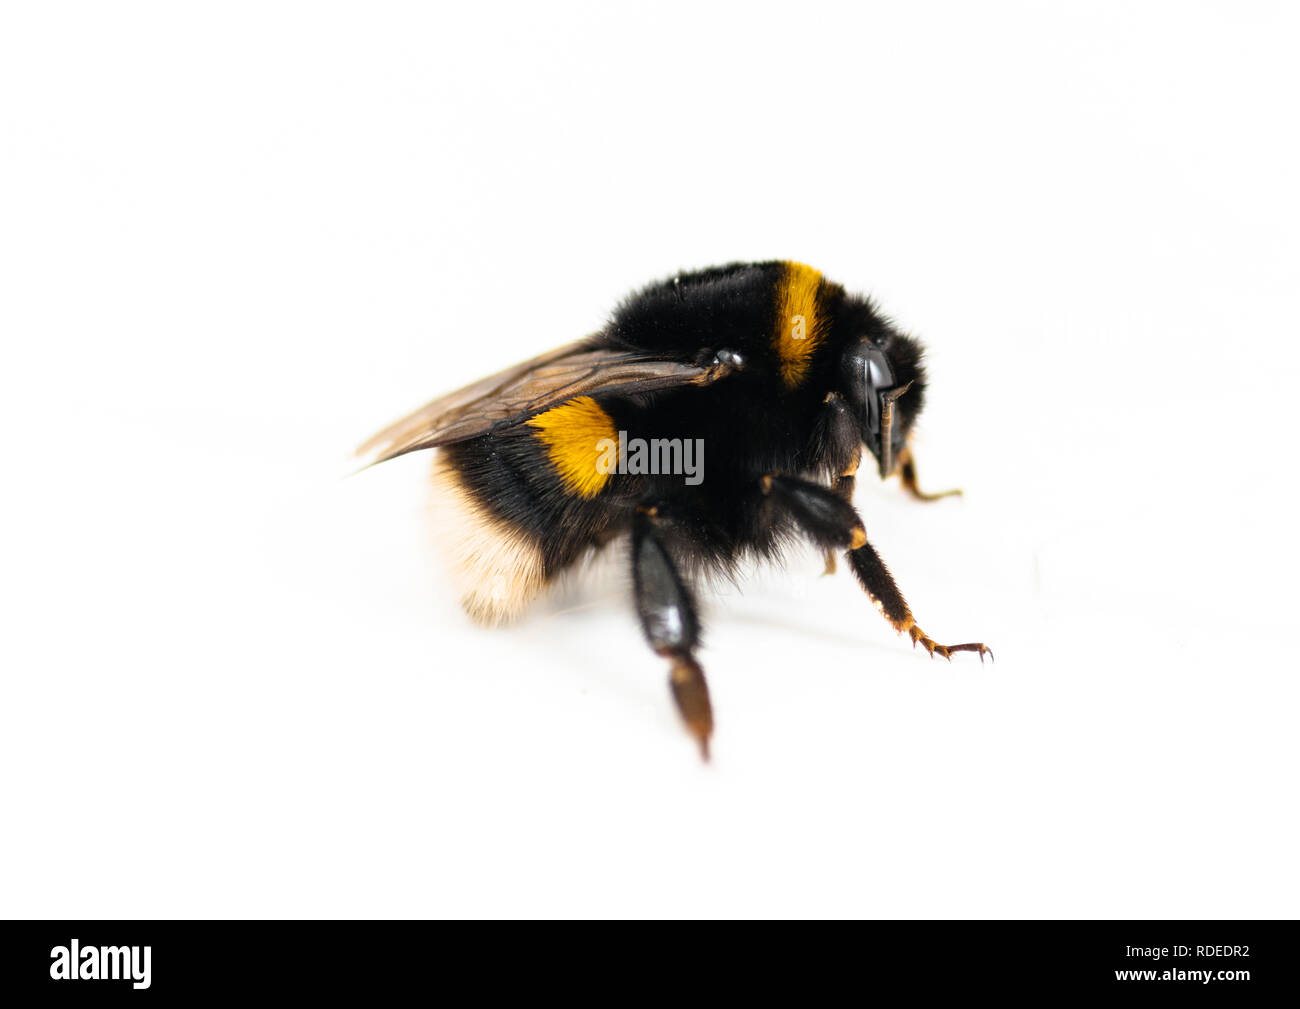 A Bumble Bee isolati su sfondo bianco - bella gli insetti impollinatori; Foto Stock